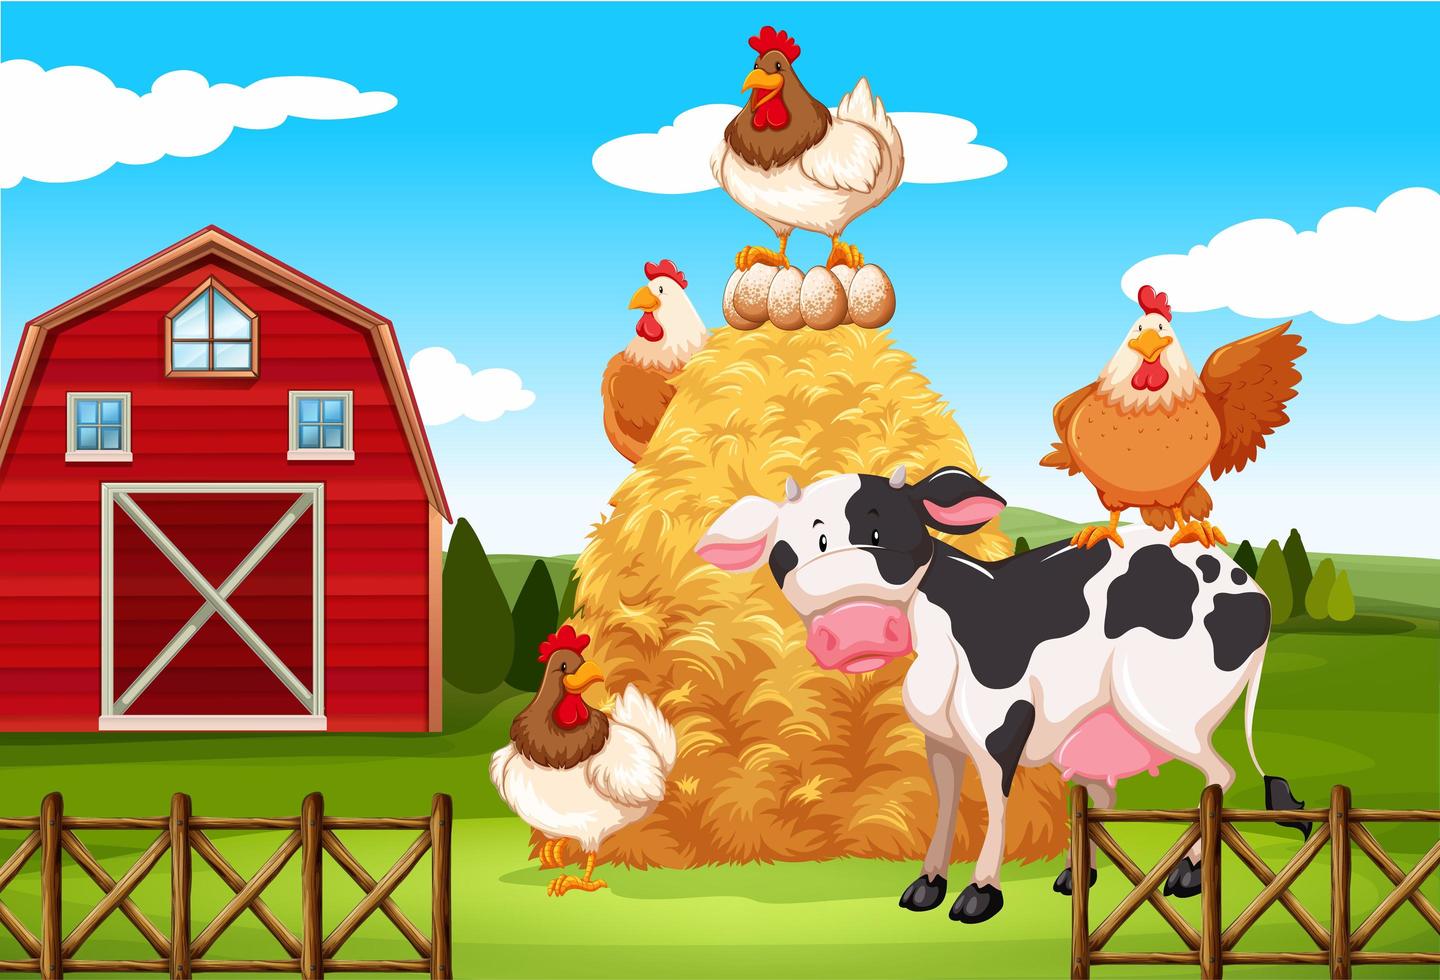 Farm scene with farm animals on the farm vector